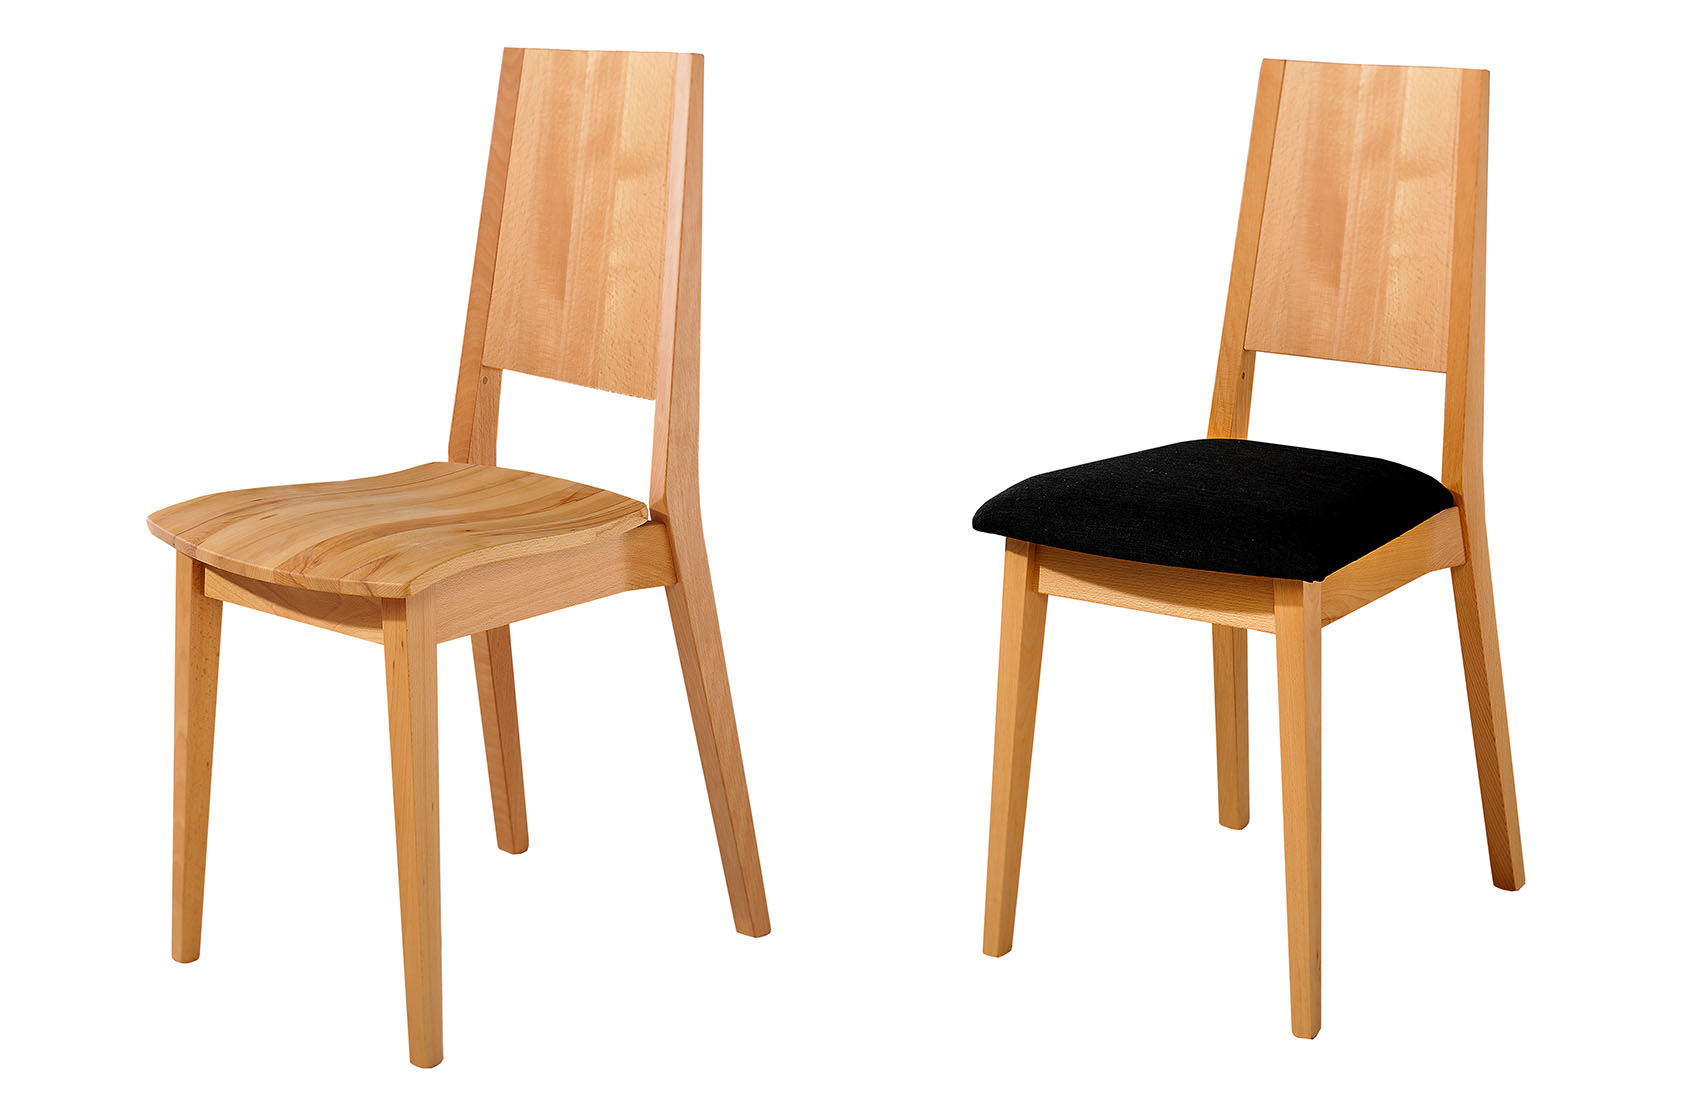 Stuhl Alto Typ 1 mit massivem Rückenteil
Links mit Holzsitz, rechts mit Ledersitz